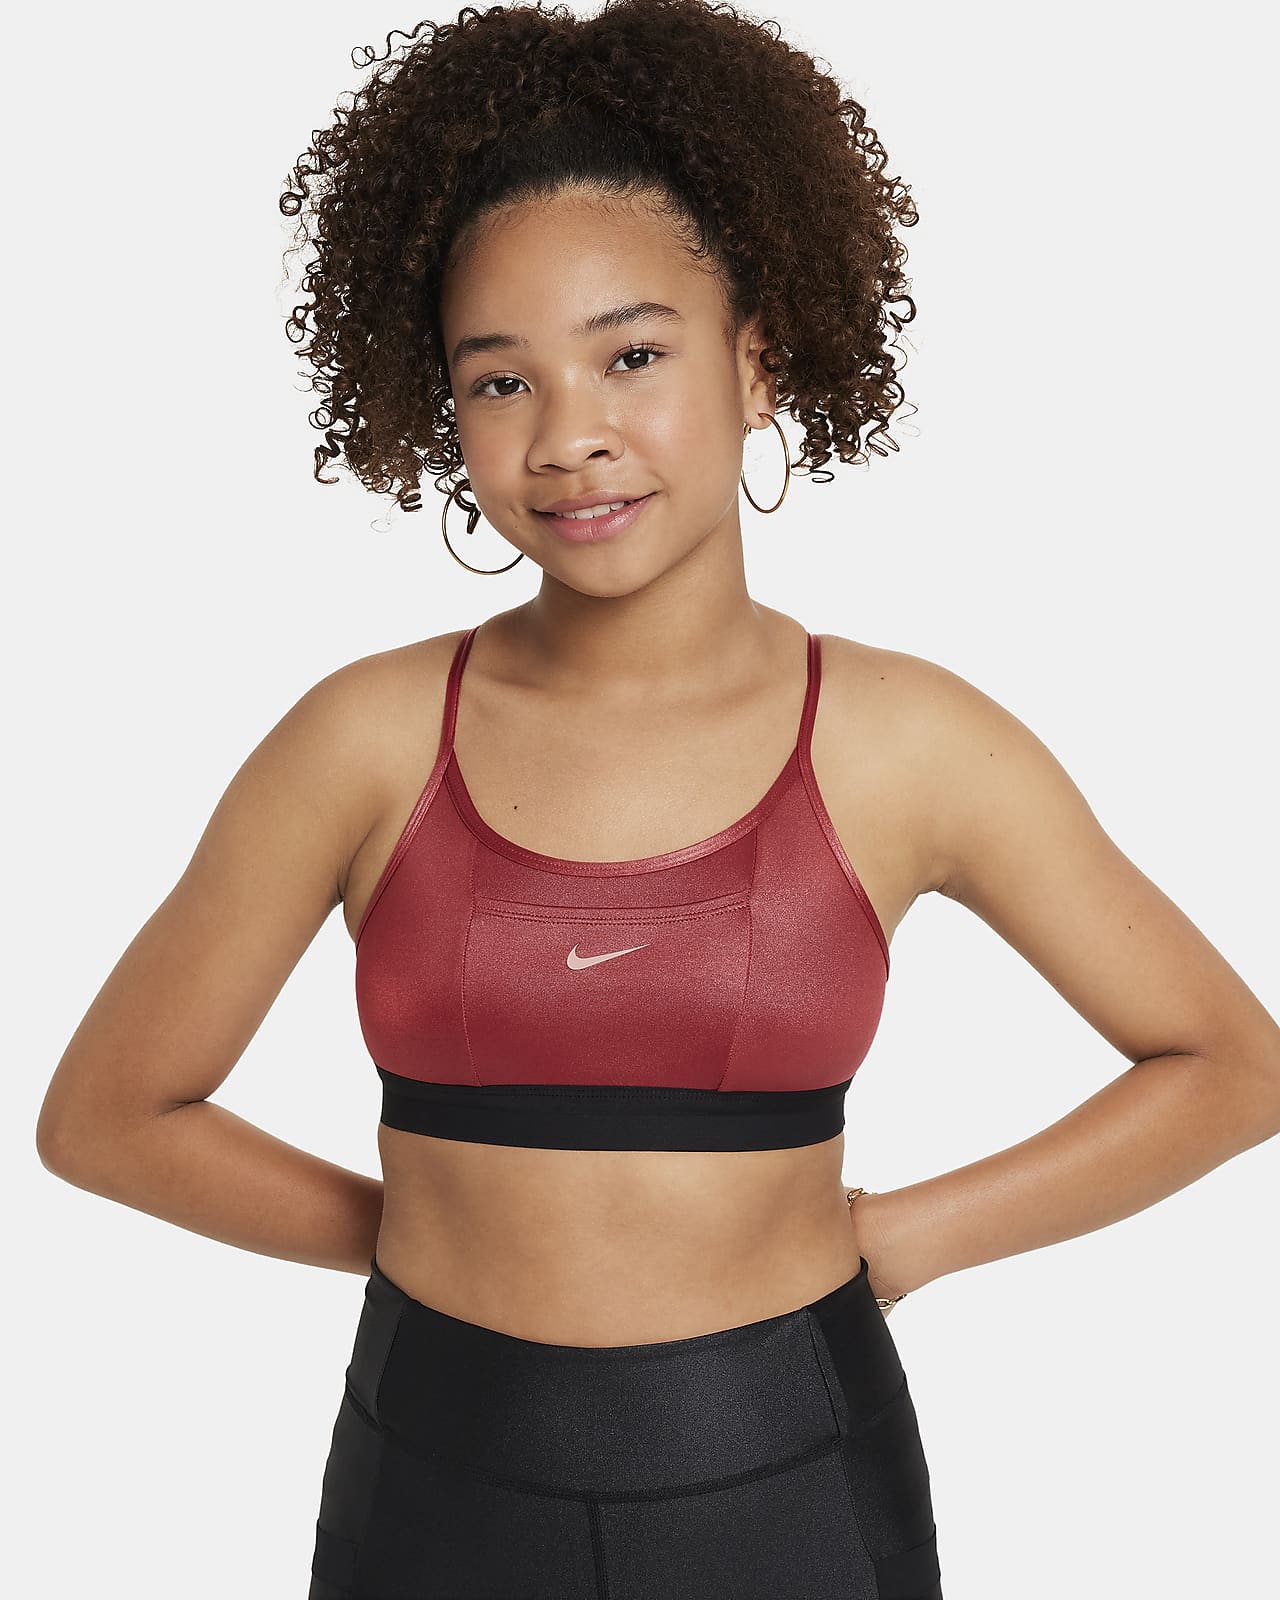 Women's Sports Bra Fit Guide. Nike ID